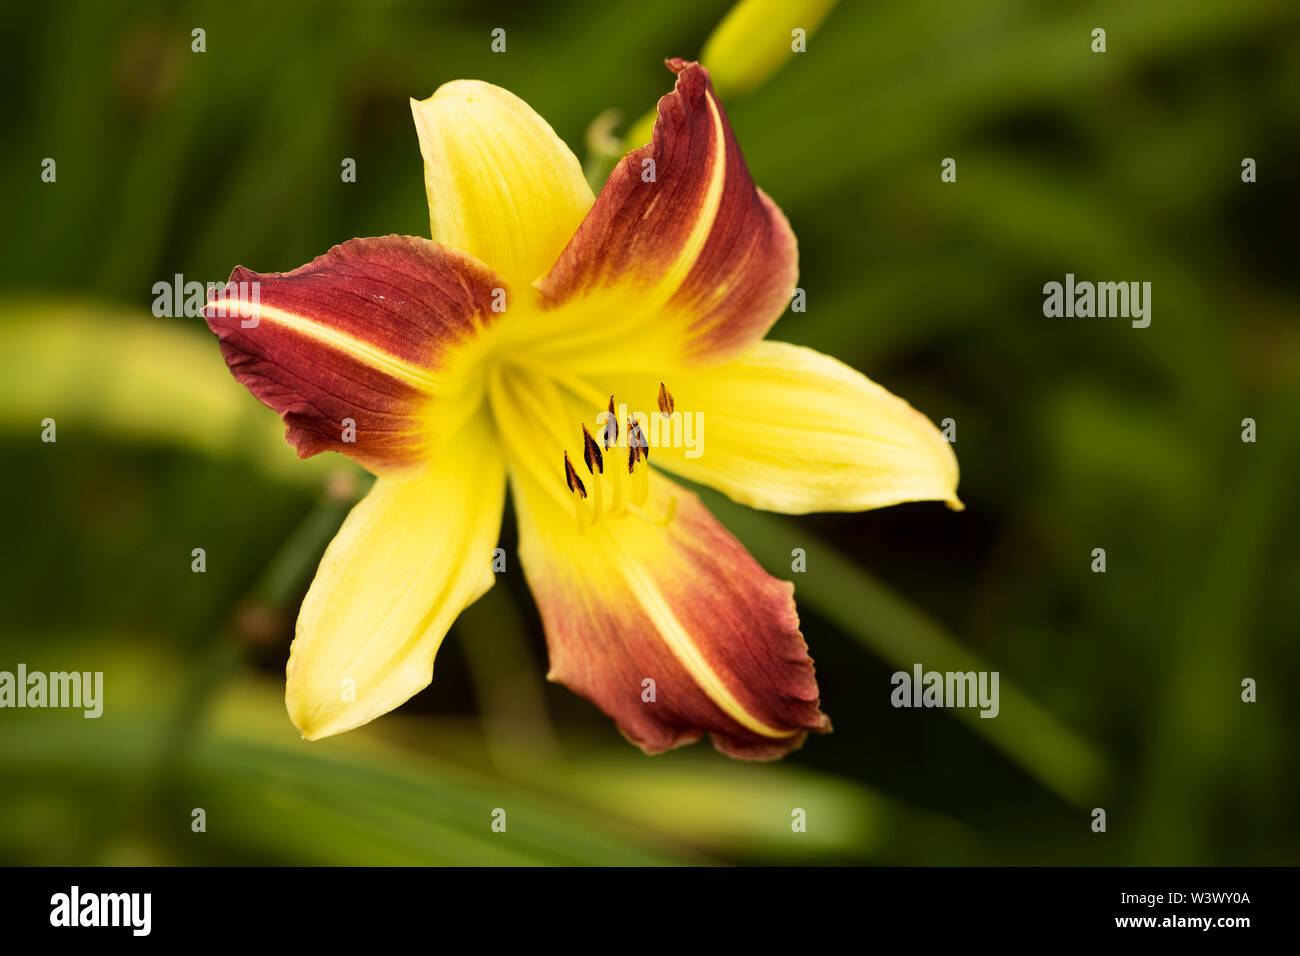 Un hémerocallis jaune et rouge hybride de la variété Jean, fleuri dans un jardin d'été. Banque D'Images